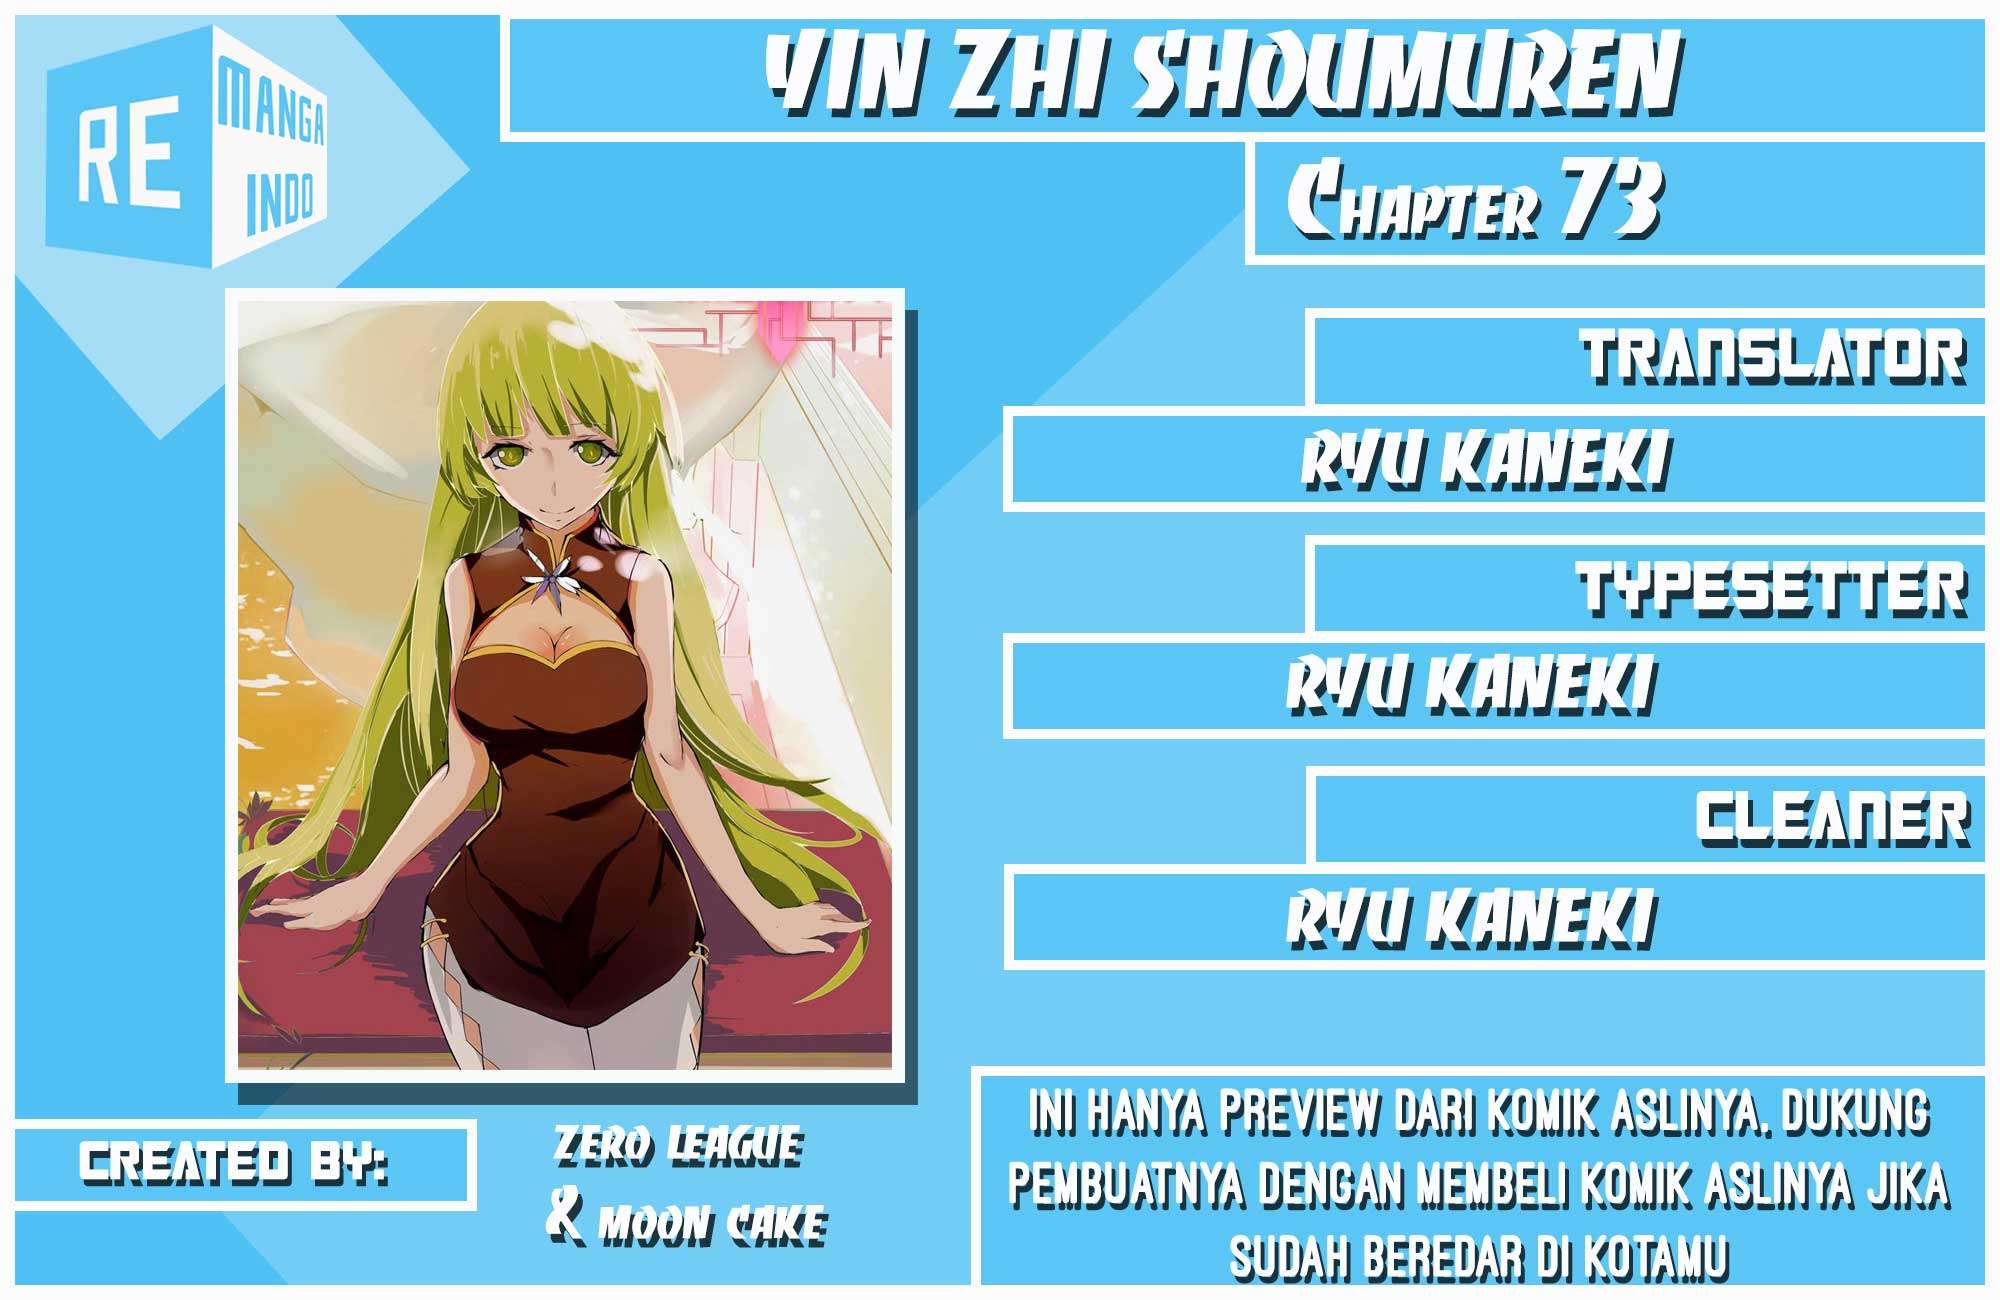 Baca Komik Yin Zhi Shoumuren Chapter 73 Gambar 1